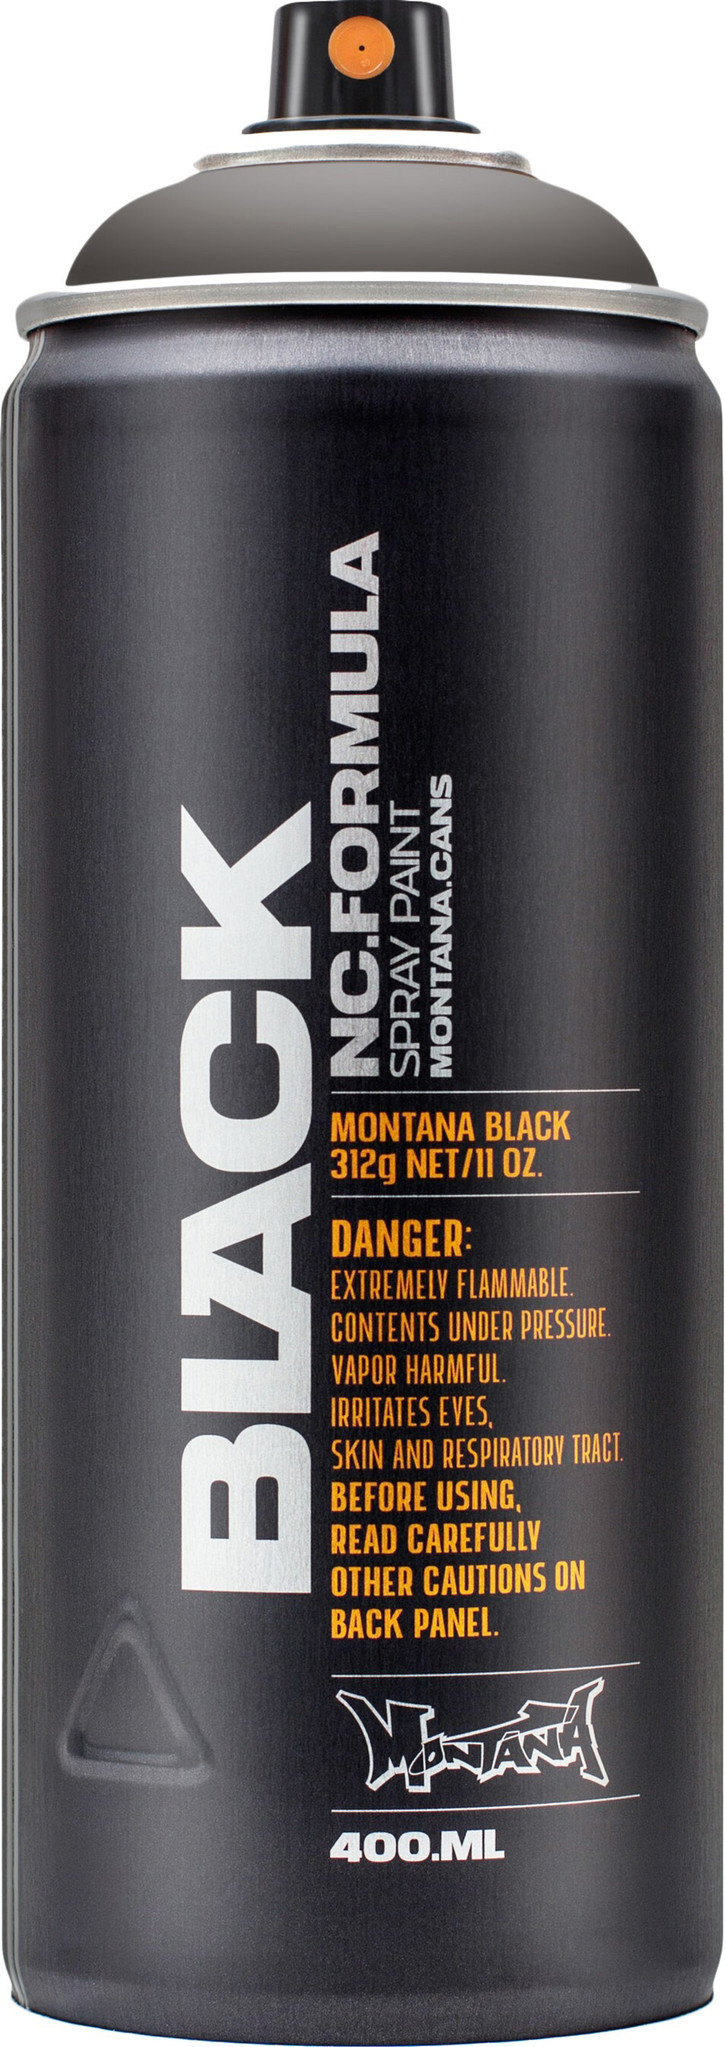 Montana Black 400 ml Slate